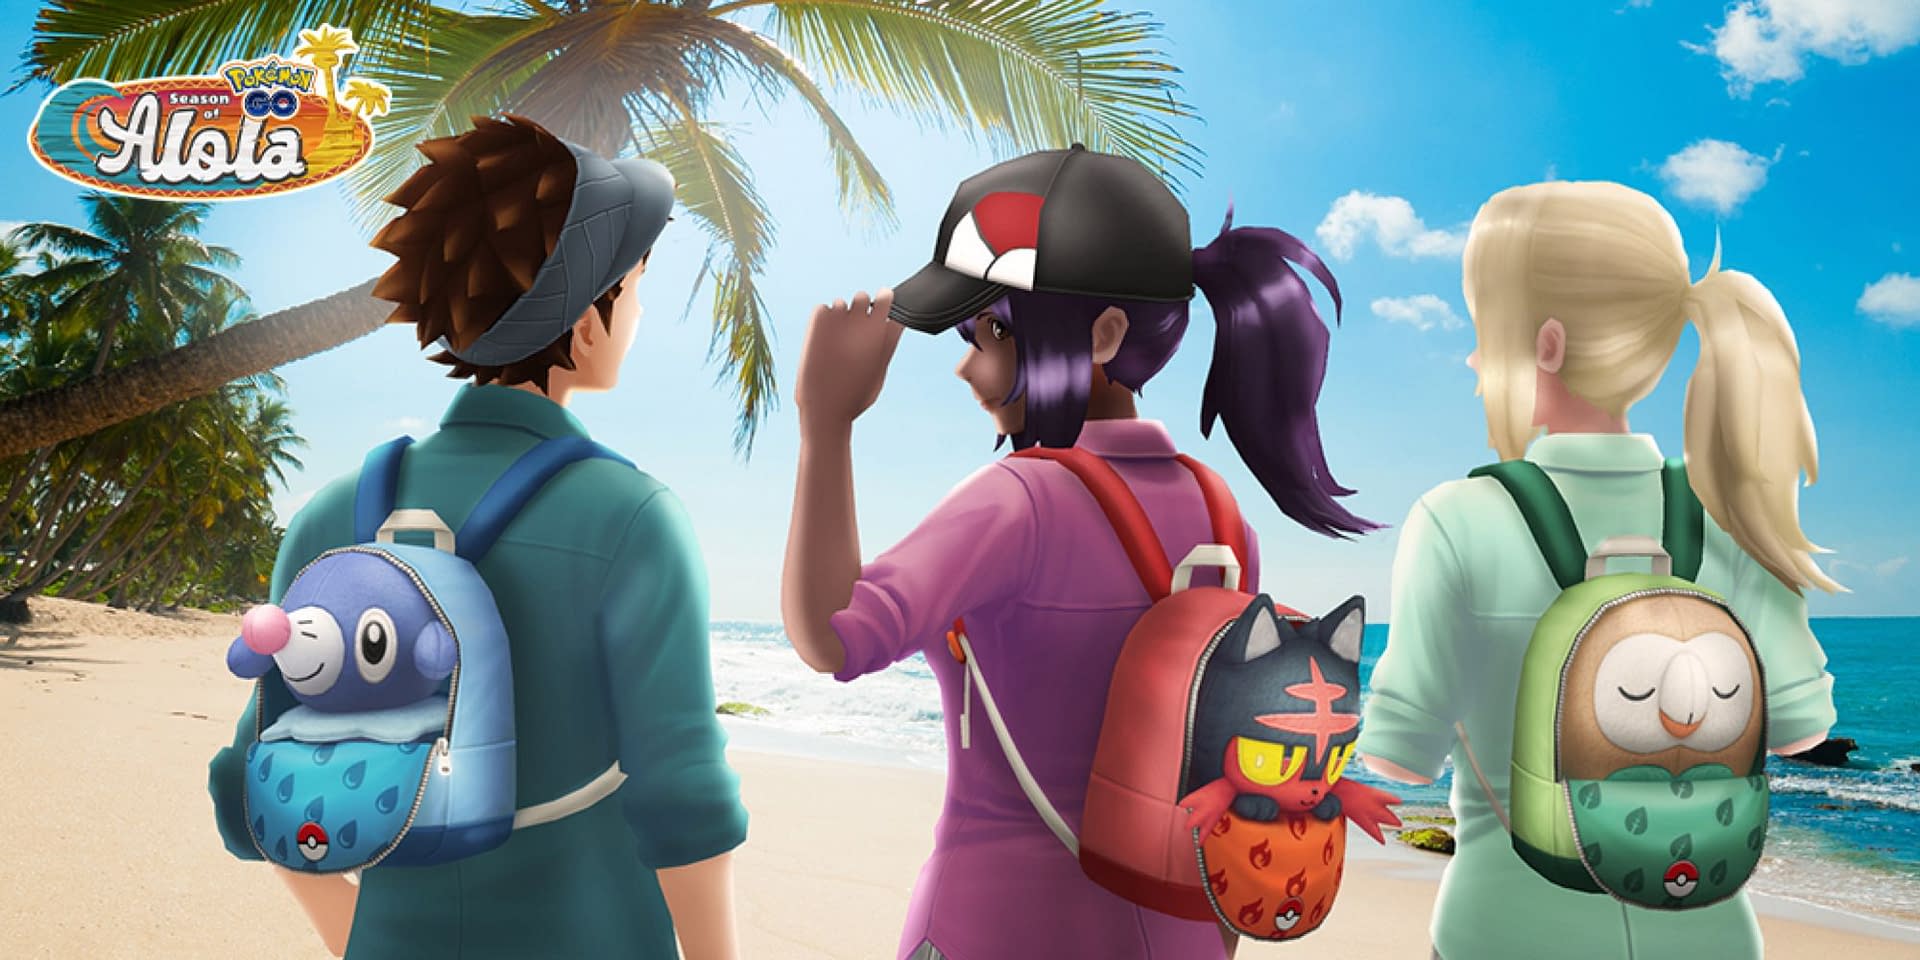 Pokémon GO  Get ready for the Season of Alola! 